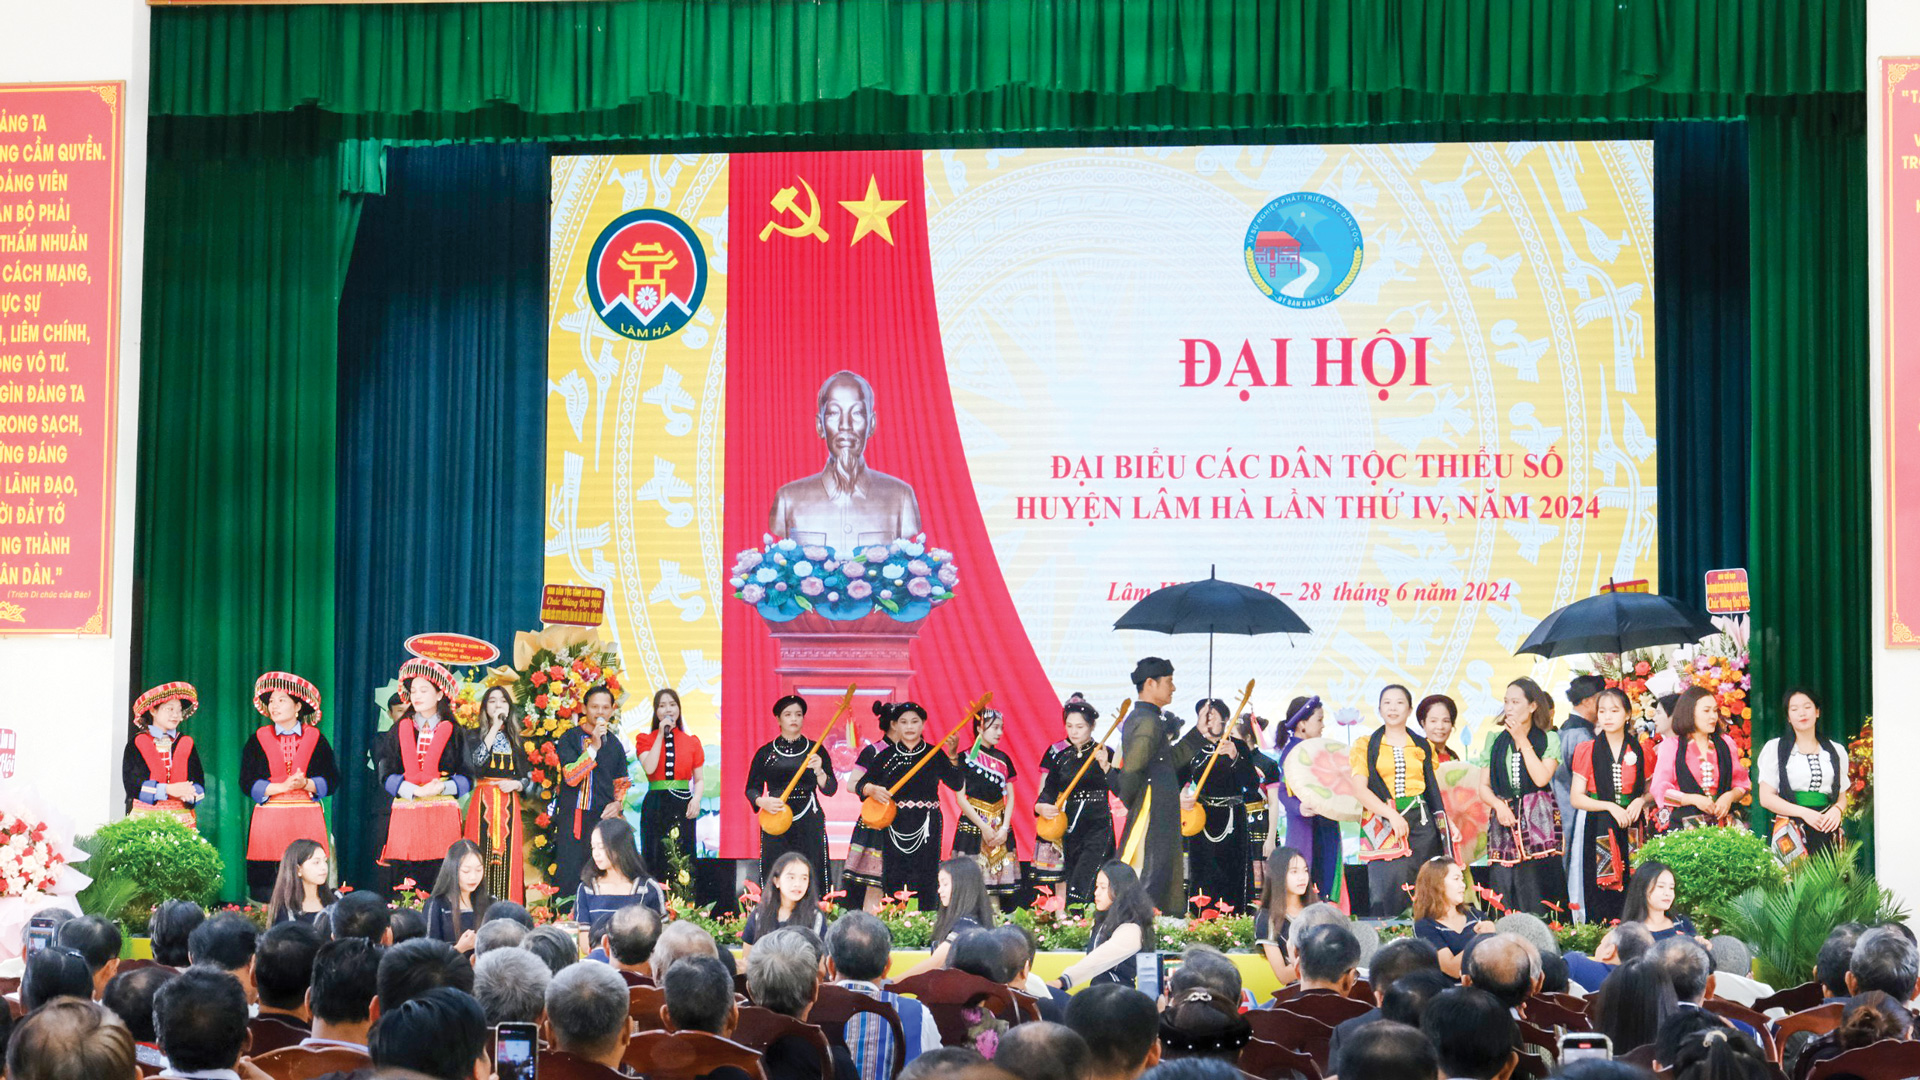 Việc thành lập các CLB, đội, nhóm sẽ là nơi để đồng bào các dân tộc
tại Lâm Hà phát huy và duy trì văn hóa vùng, miền